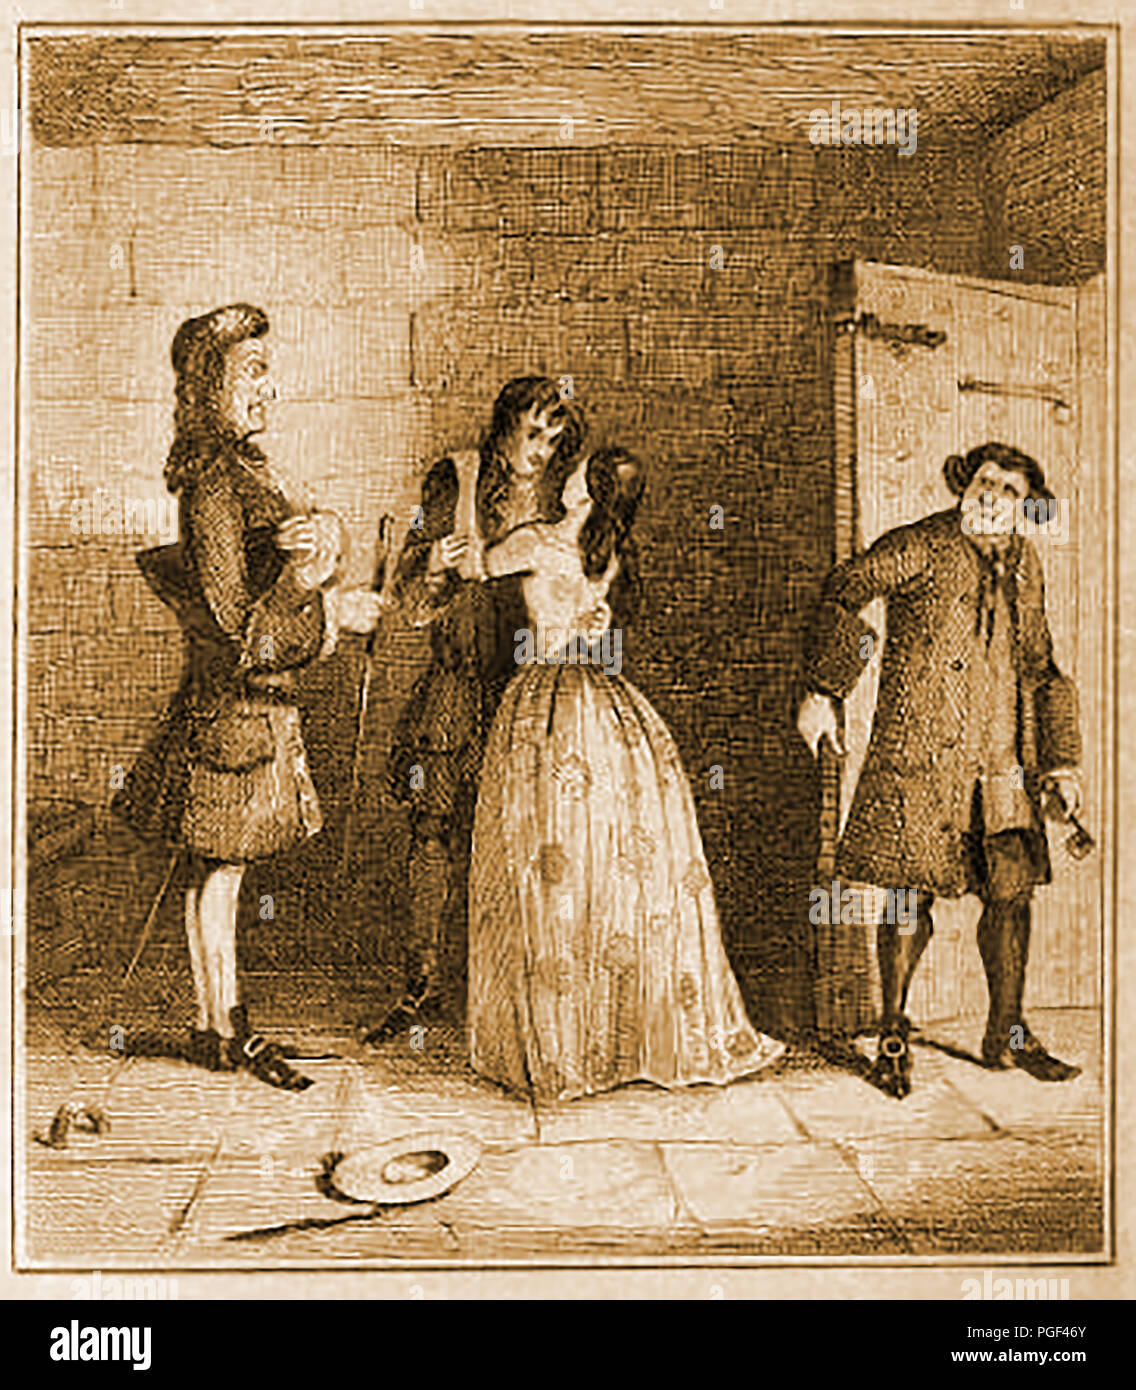 Une visite à Claude Duval ou du Vall pendant leur séjour en prison - (1643 - 1670) Il était un fameux 379 Français actif dans la restauration en Angleterre. Jamais violent et toujours courtois mais il est mort sur Tyburn gallows tree après avoir été reconnu coupable de six vols à main armée.. Banque D'Images